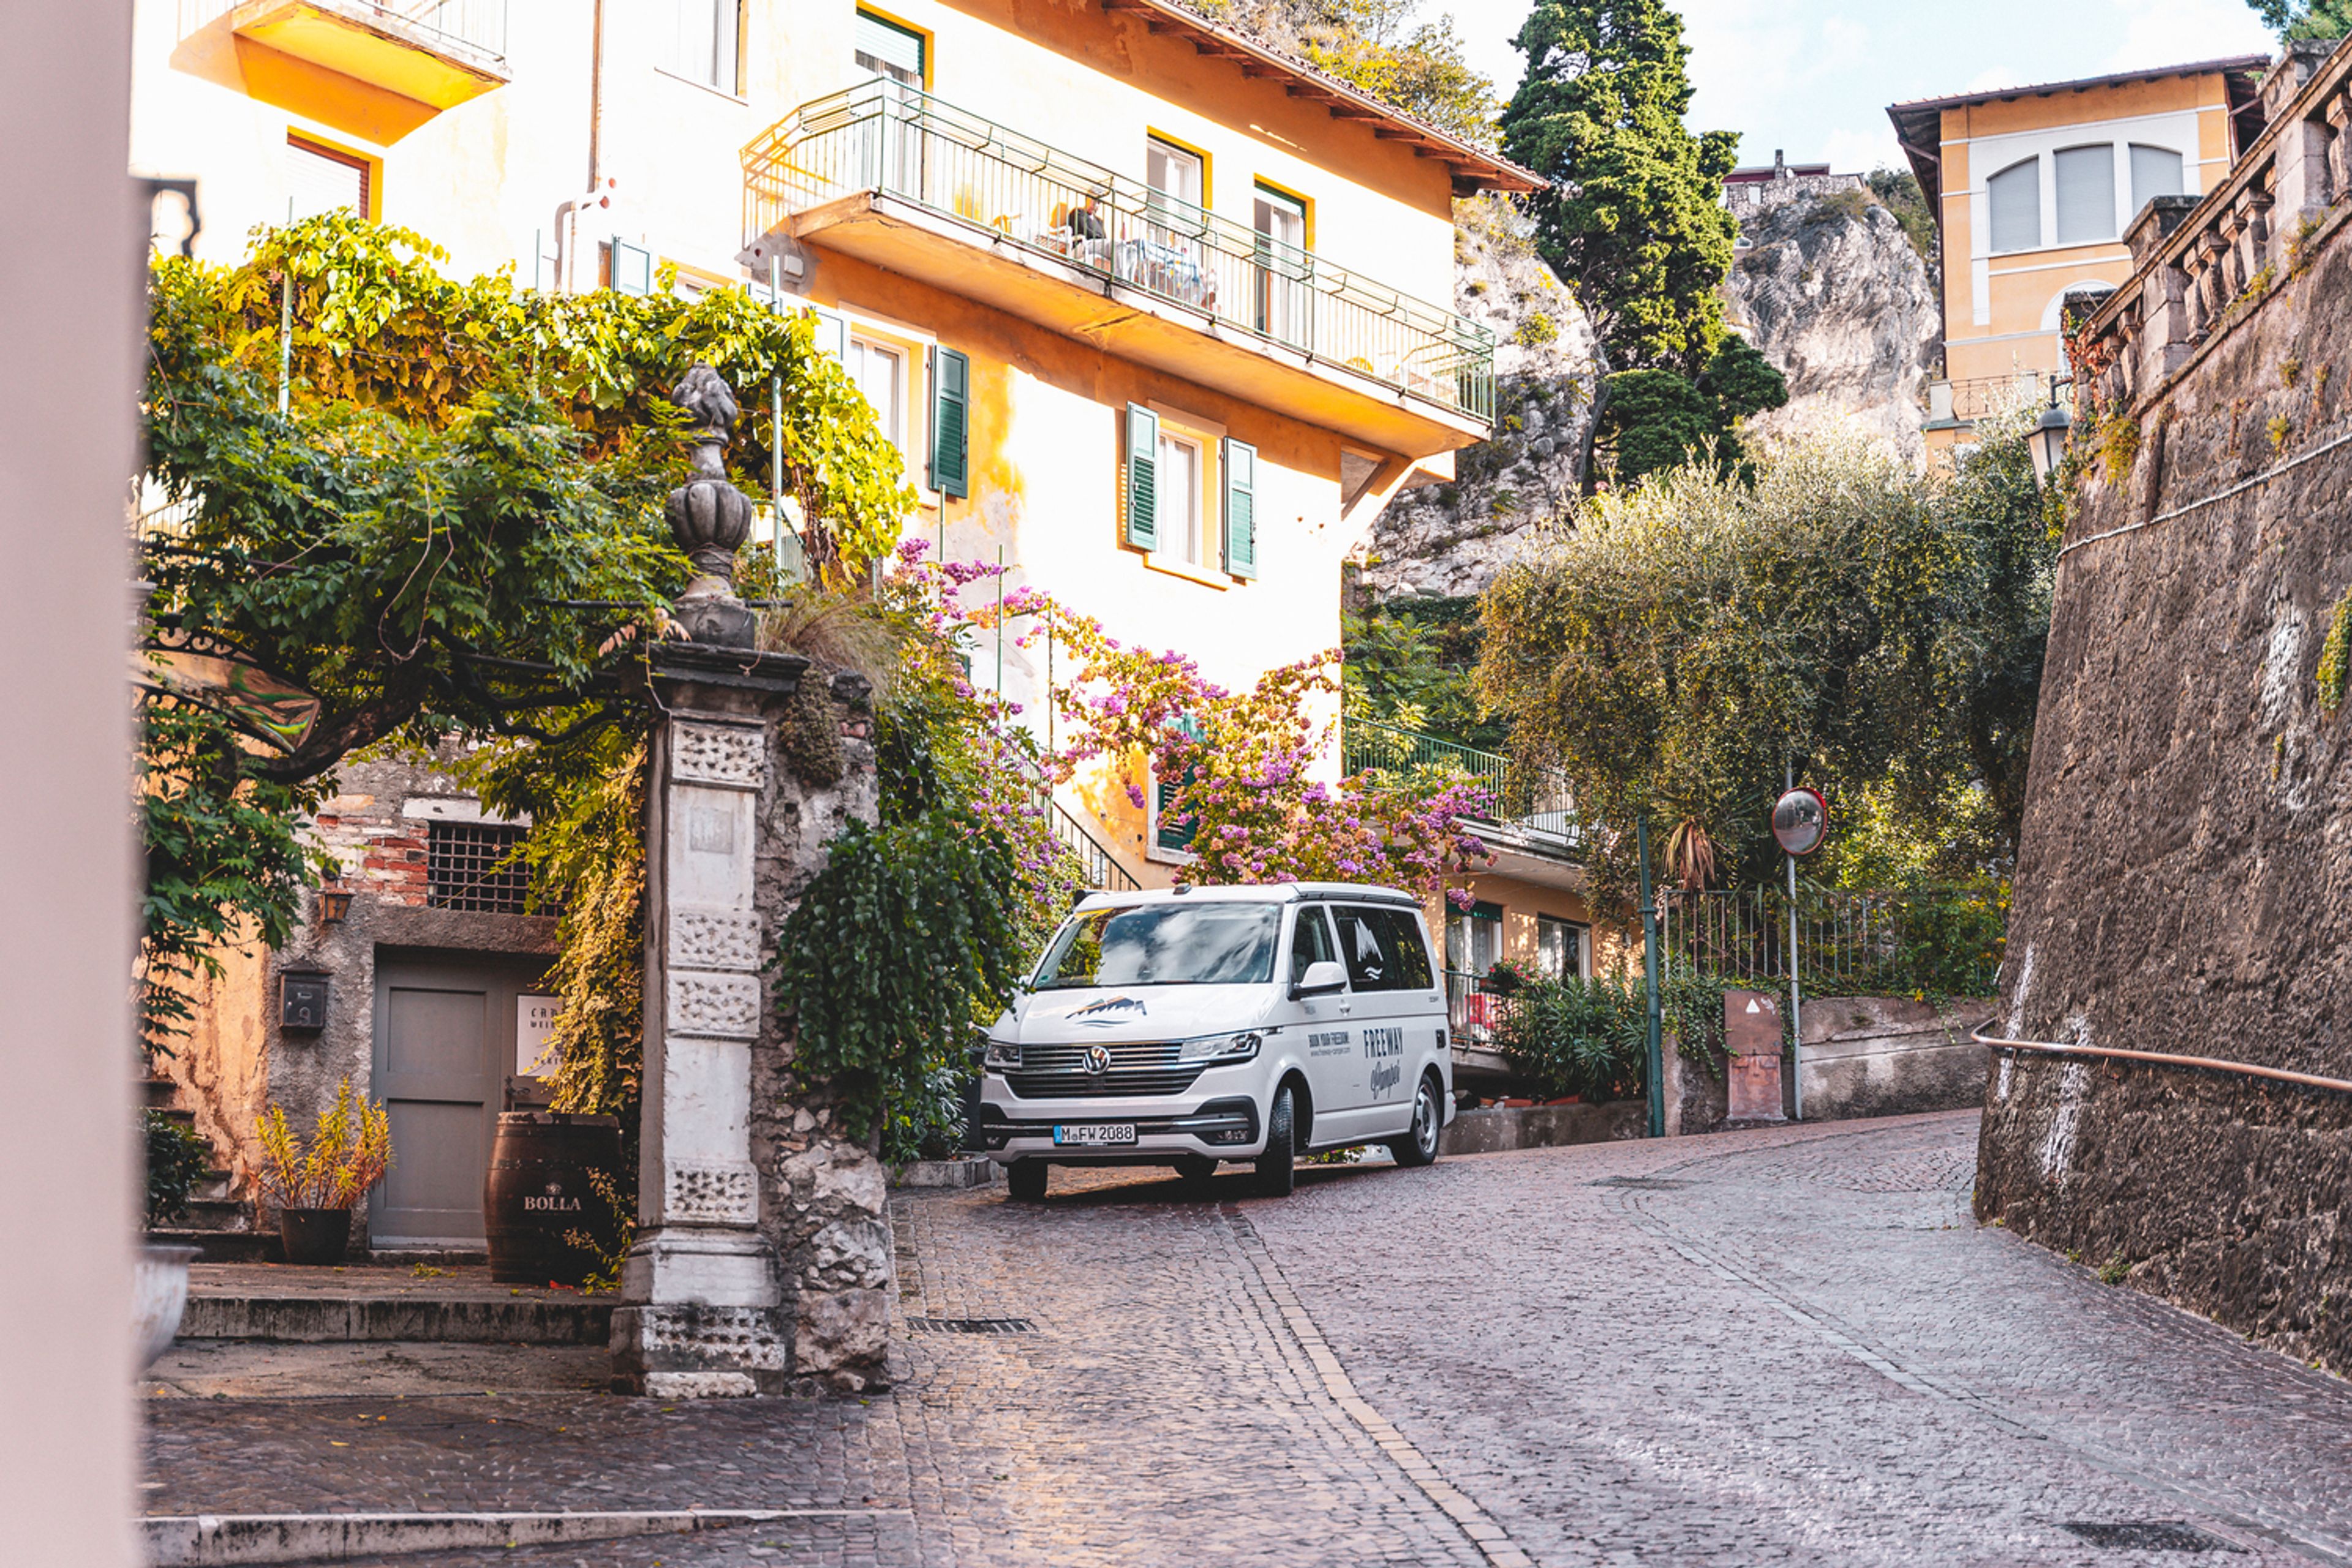 VW Bulli California Ocean T6.1 sulla strada di Lazise, una delle belle cittadine del Lago di Garda